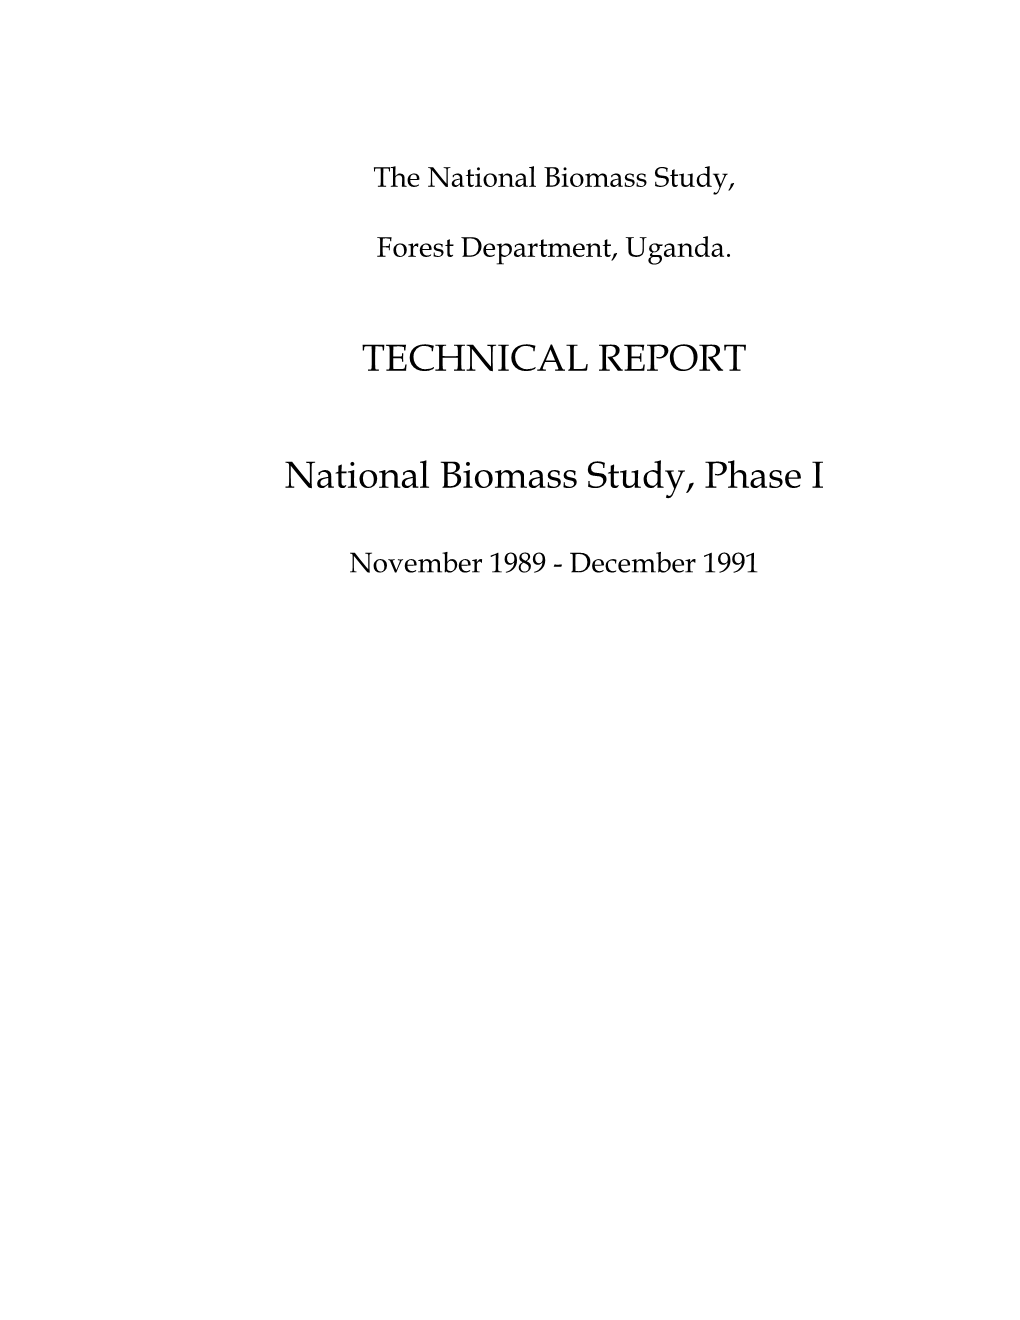 Biomass Technical Report